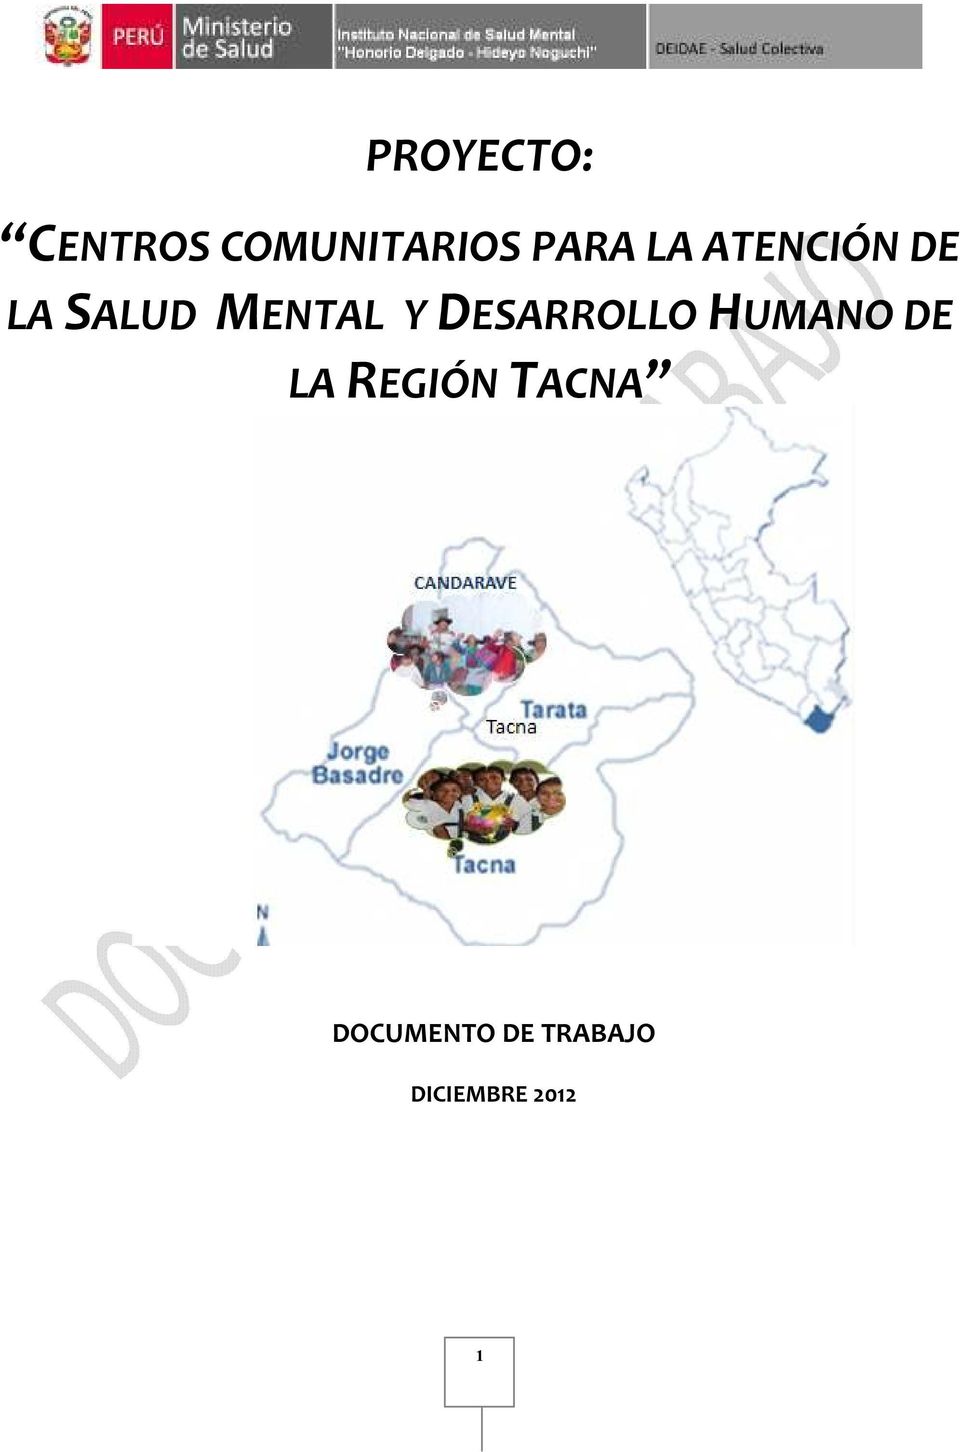 DESARROLLO HUMANO DE LA REGIÓN